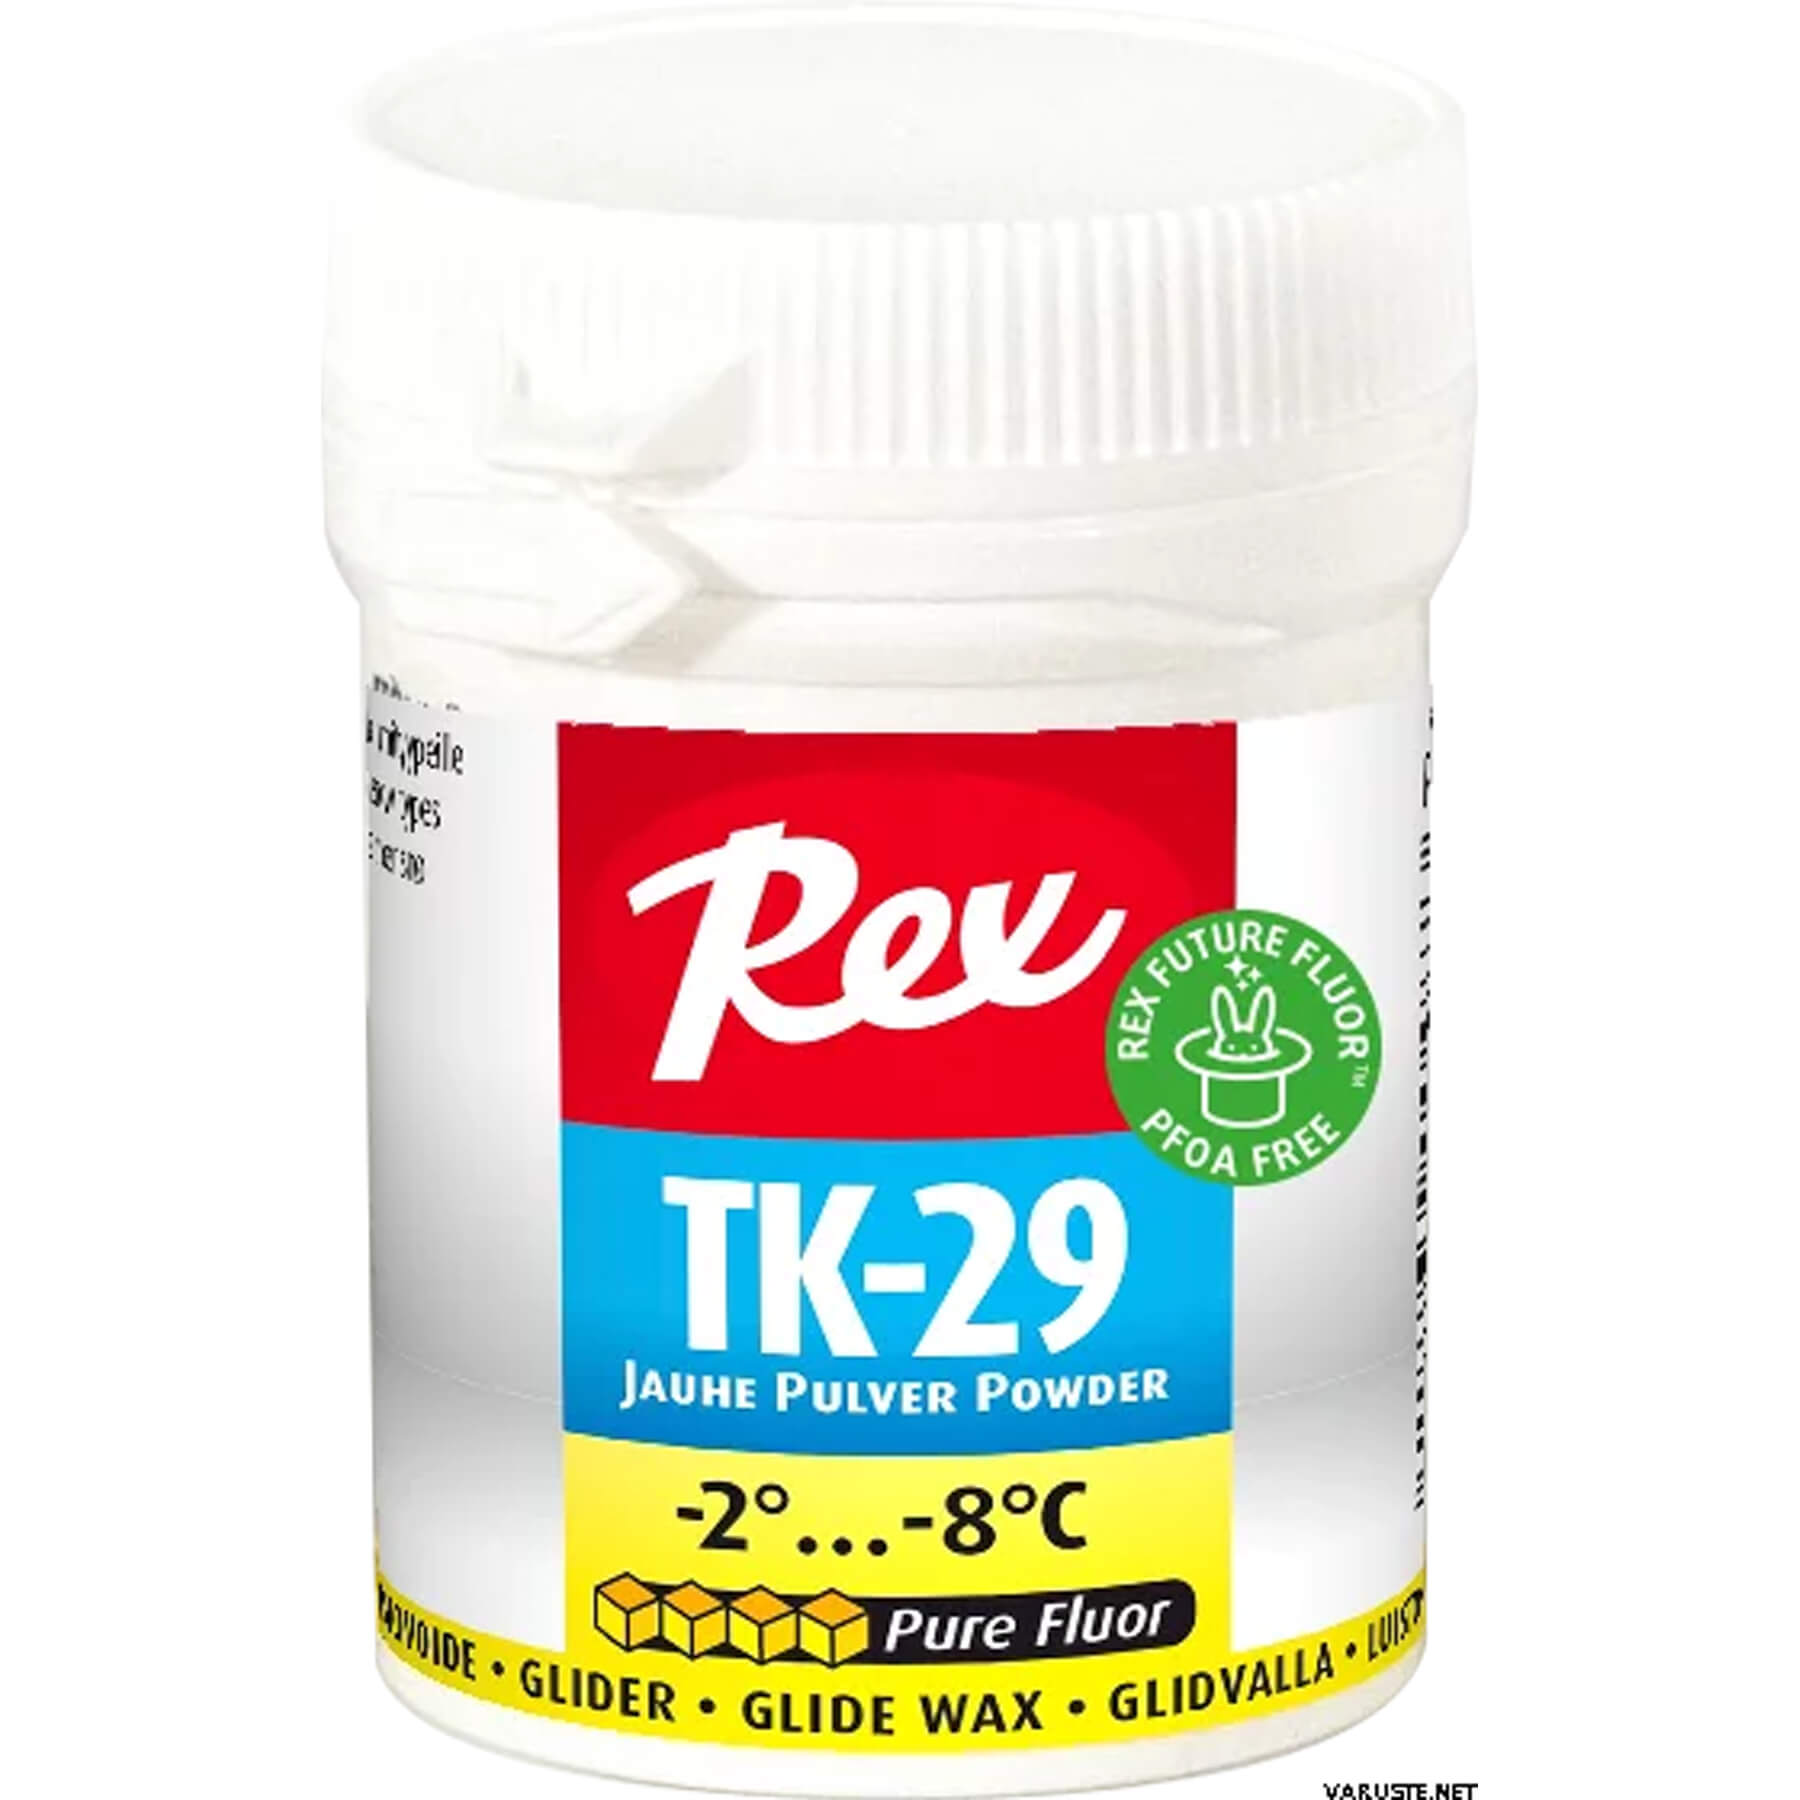 Rex TK-29 Powder